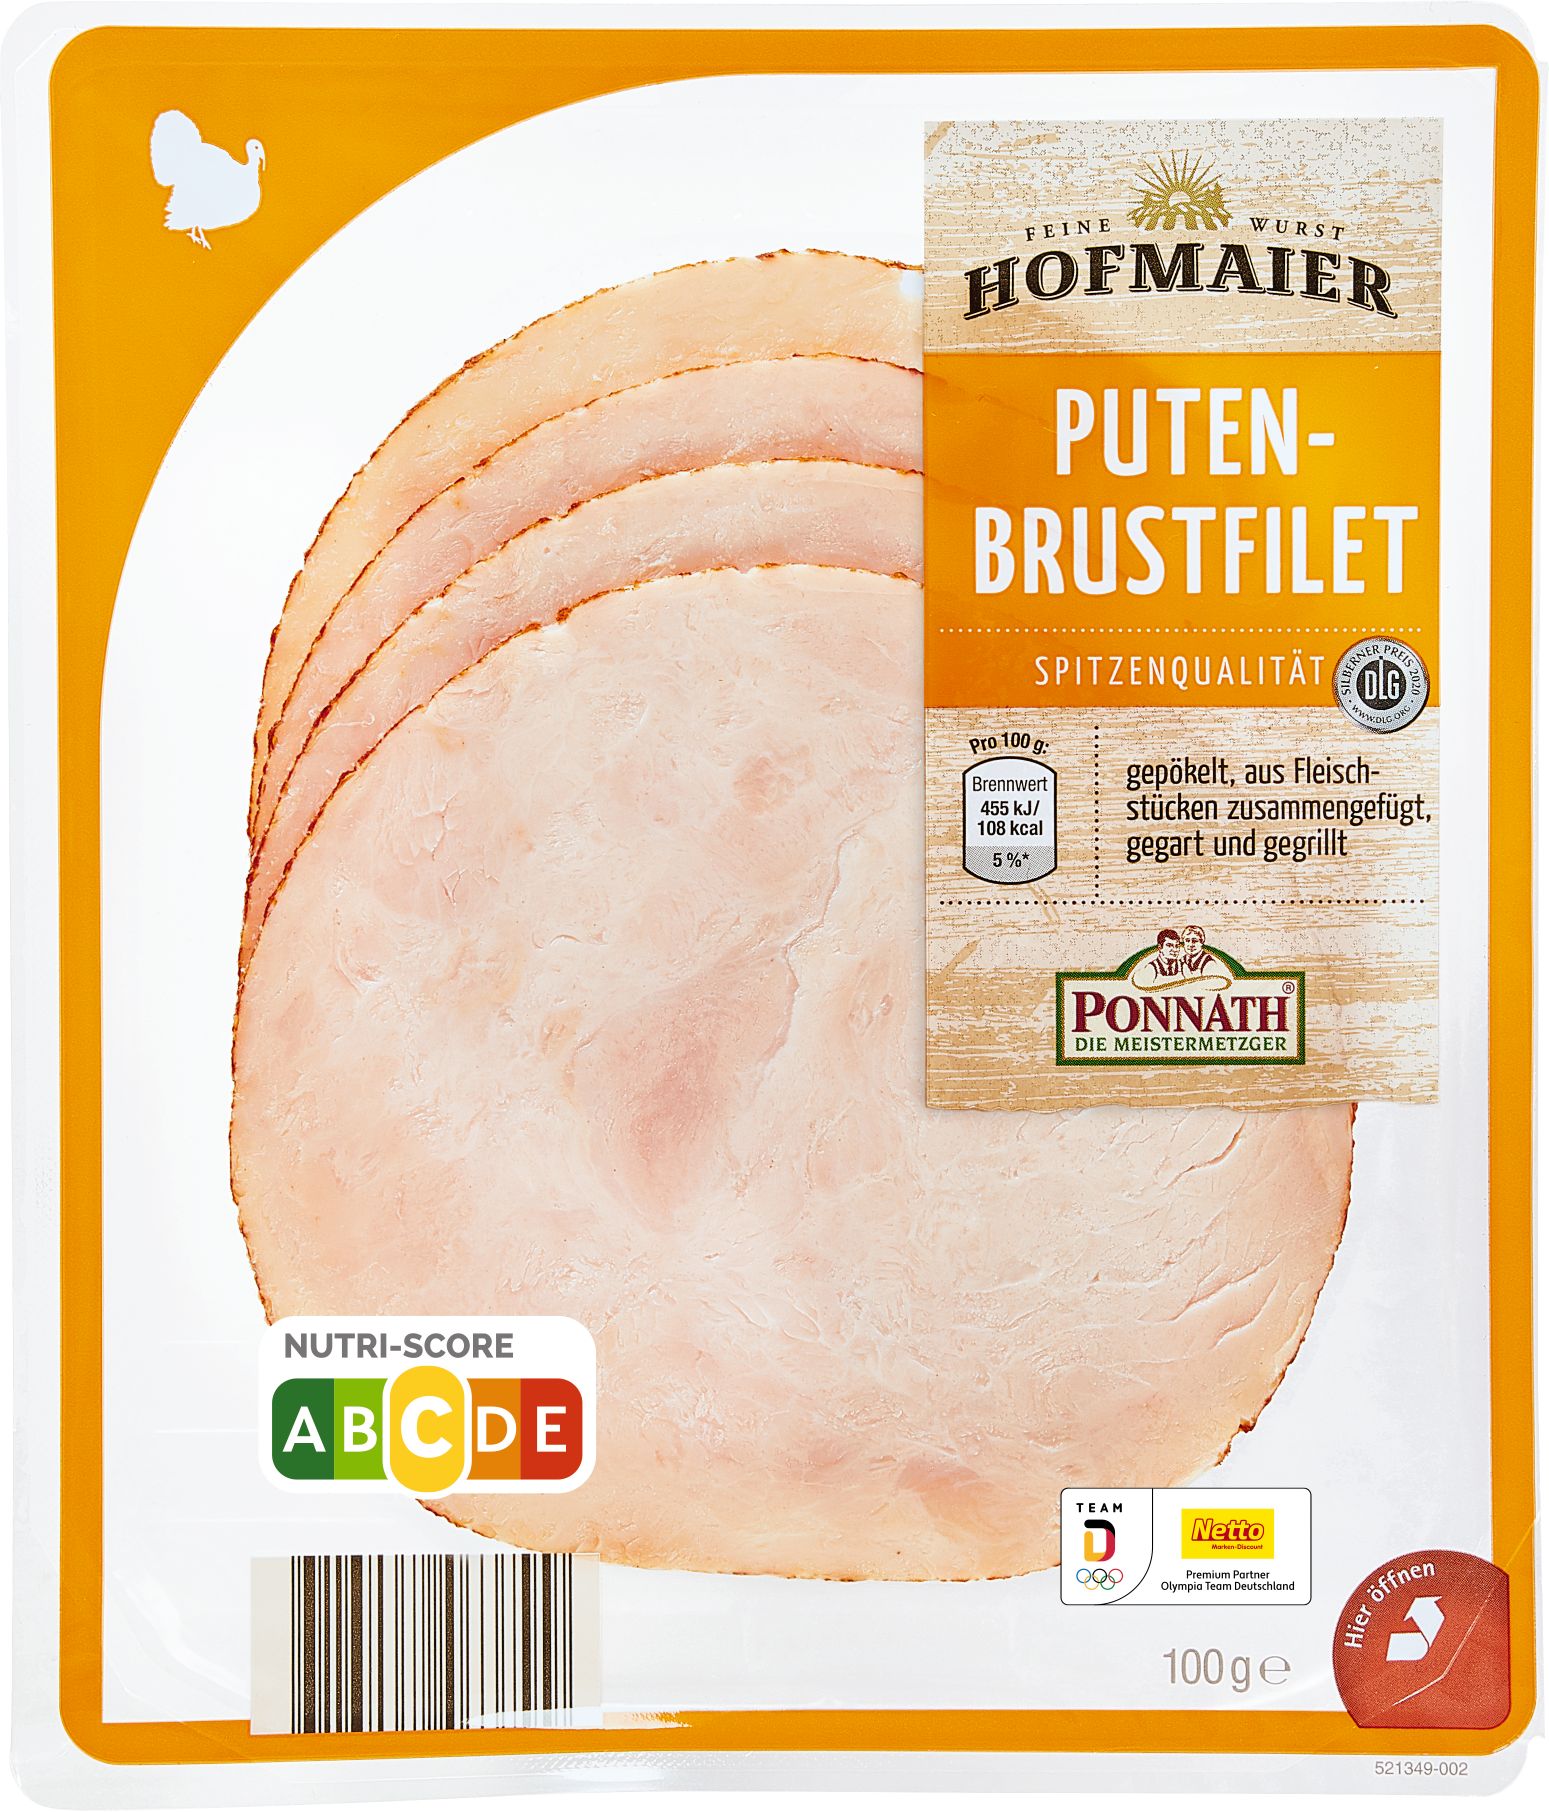 Putenbrustfilet (100 Gramm) Ponnath DIE MEISTERMETZGER GmbH Geflügelwurst  Lebensmittel / Getränke / Tabakwaren Fleisch / Wurst / Geflügel Wurstwaren  · mynetfair